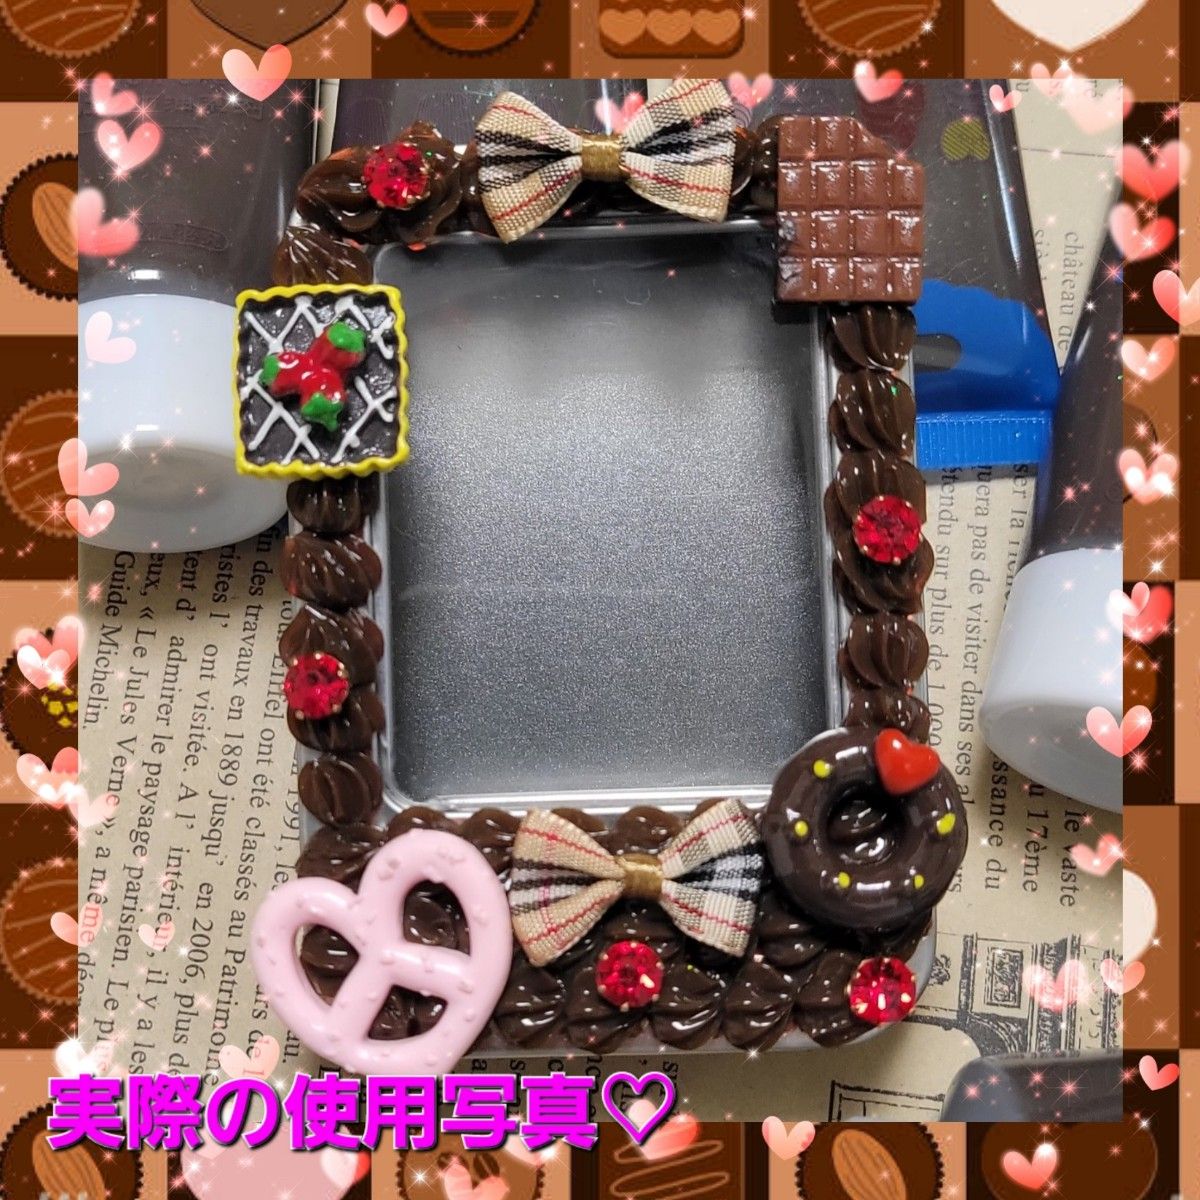 【数量限定!!!】半透明チョコレートカラー5本 ホイップデコ